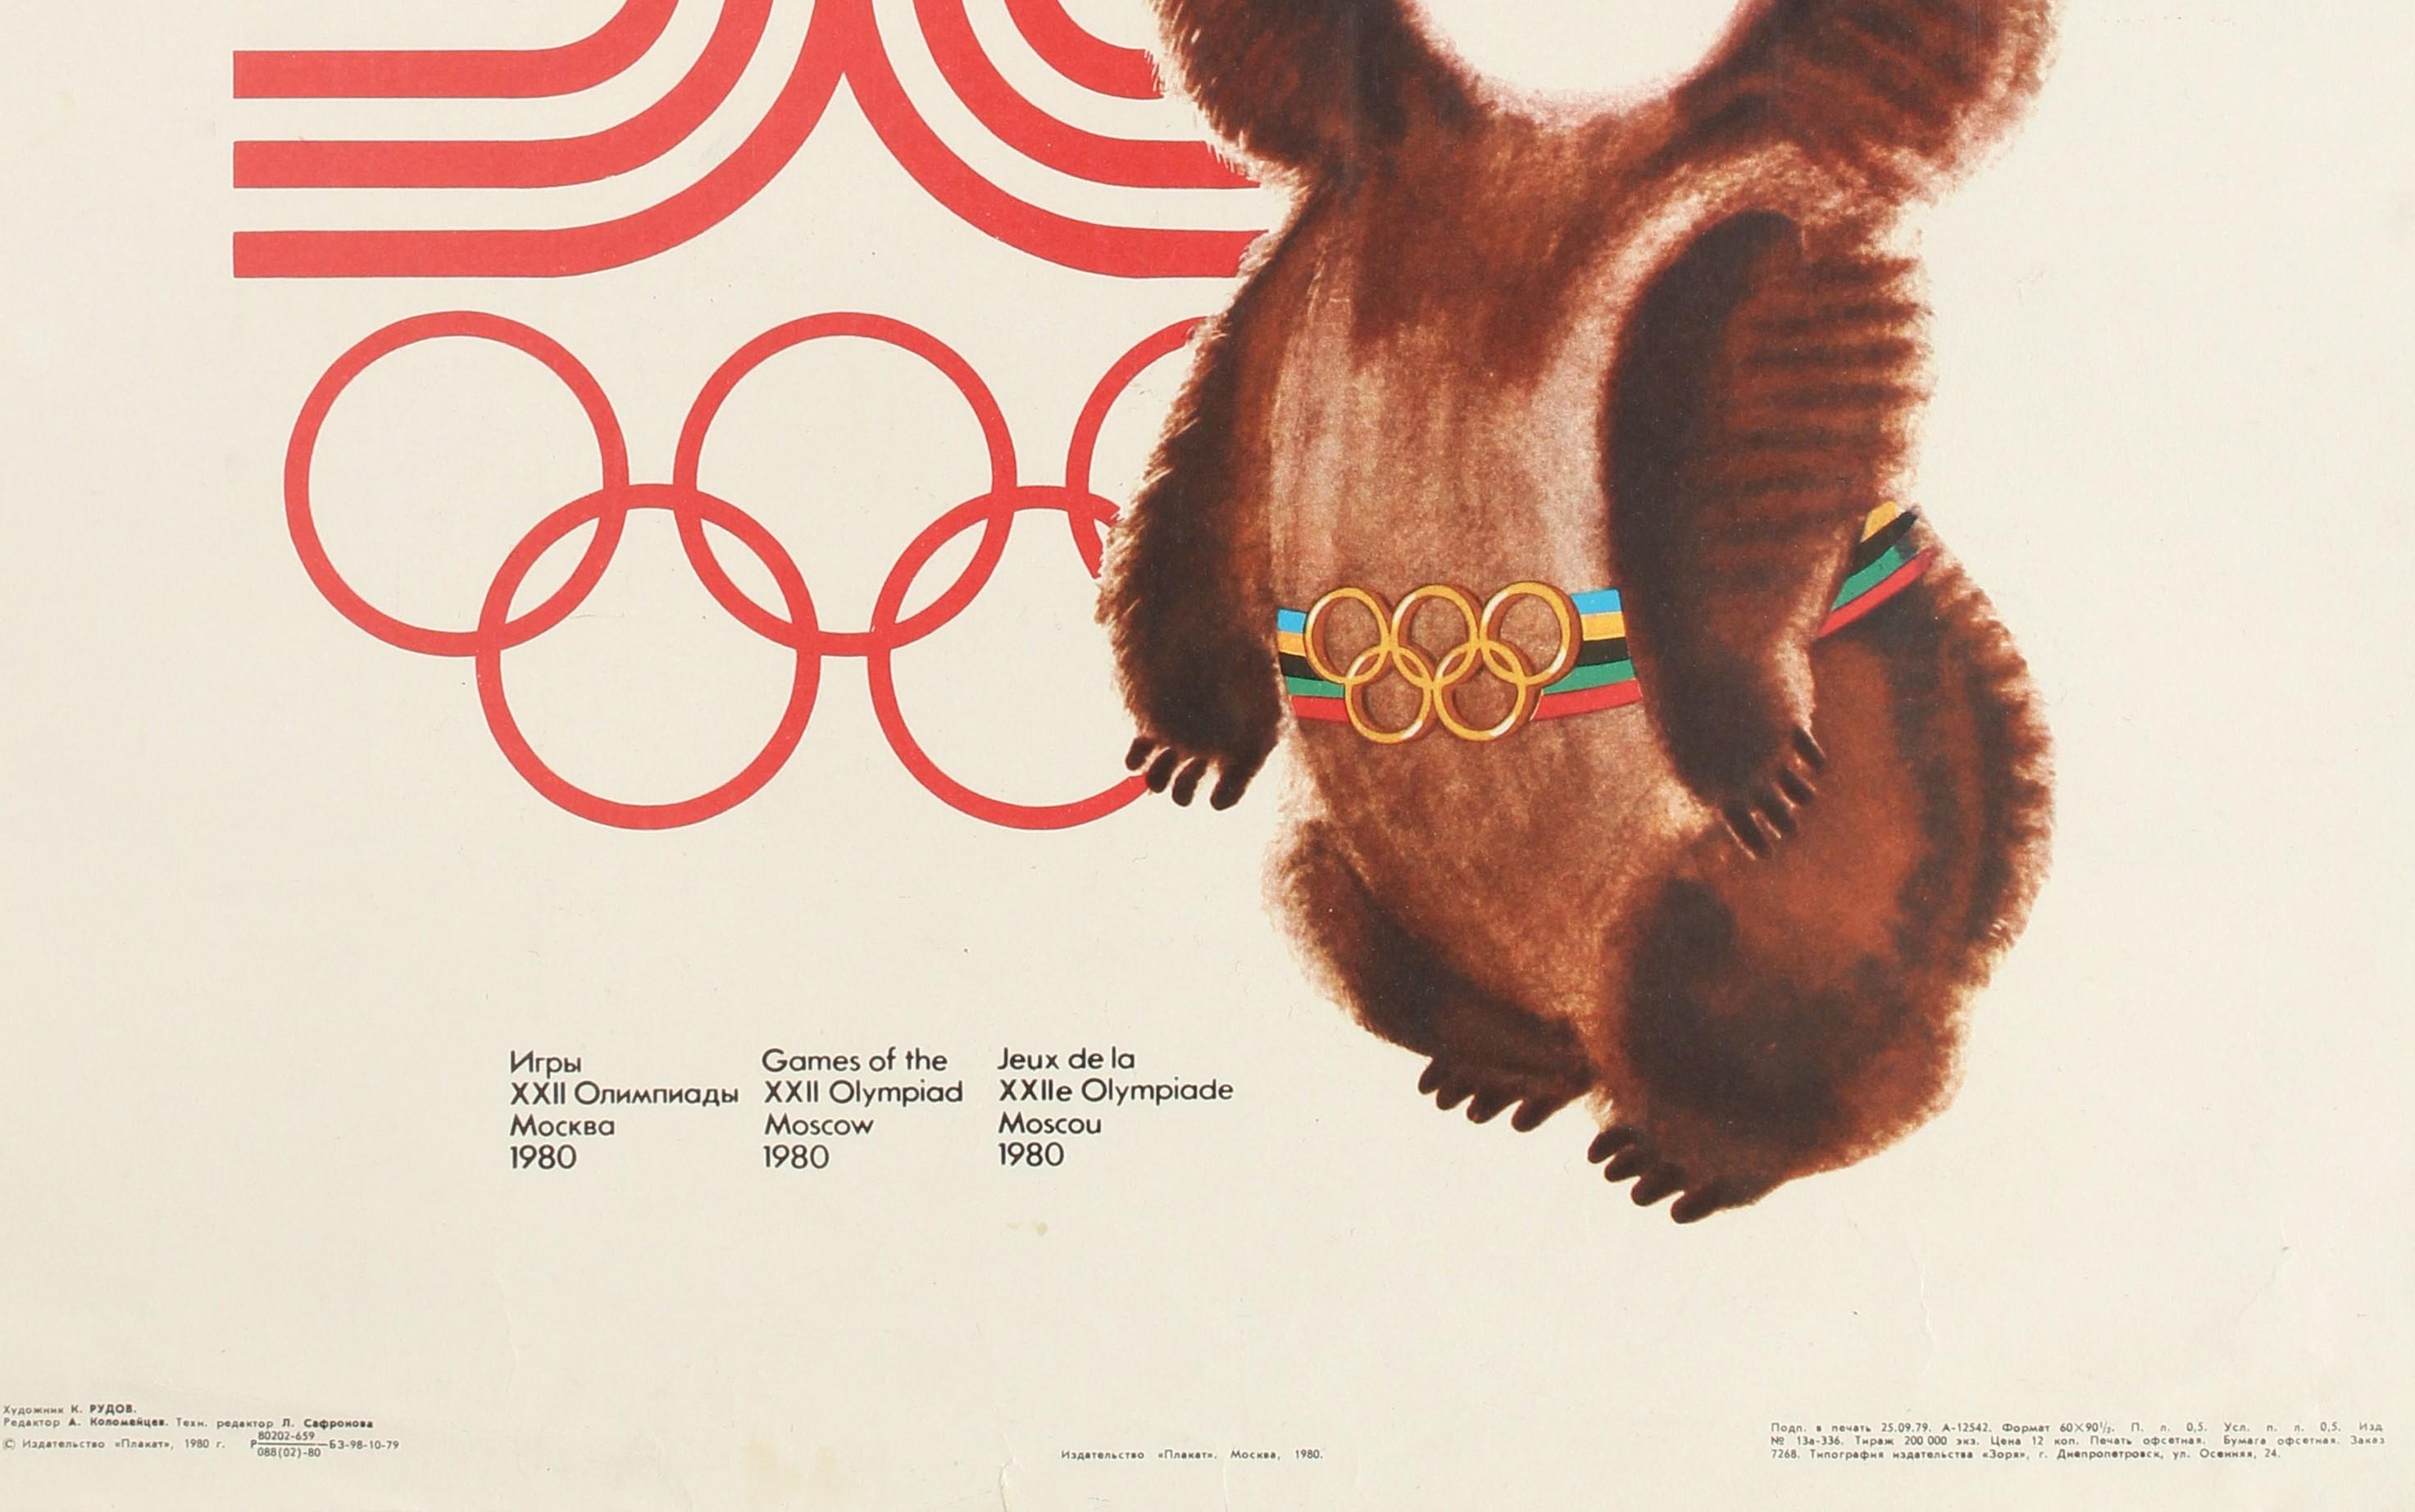 misha olympic mascot